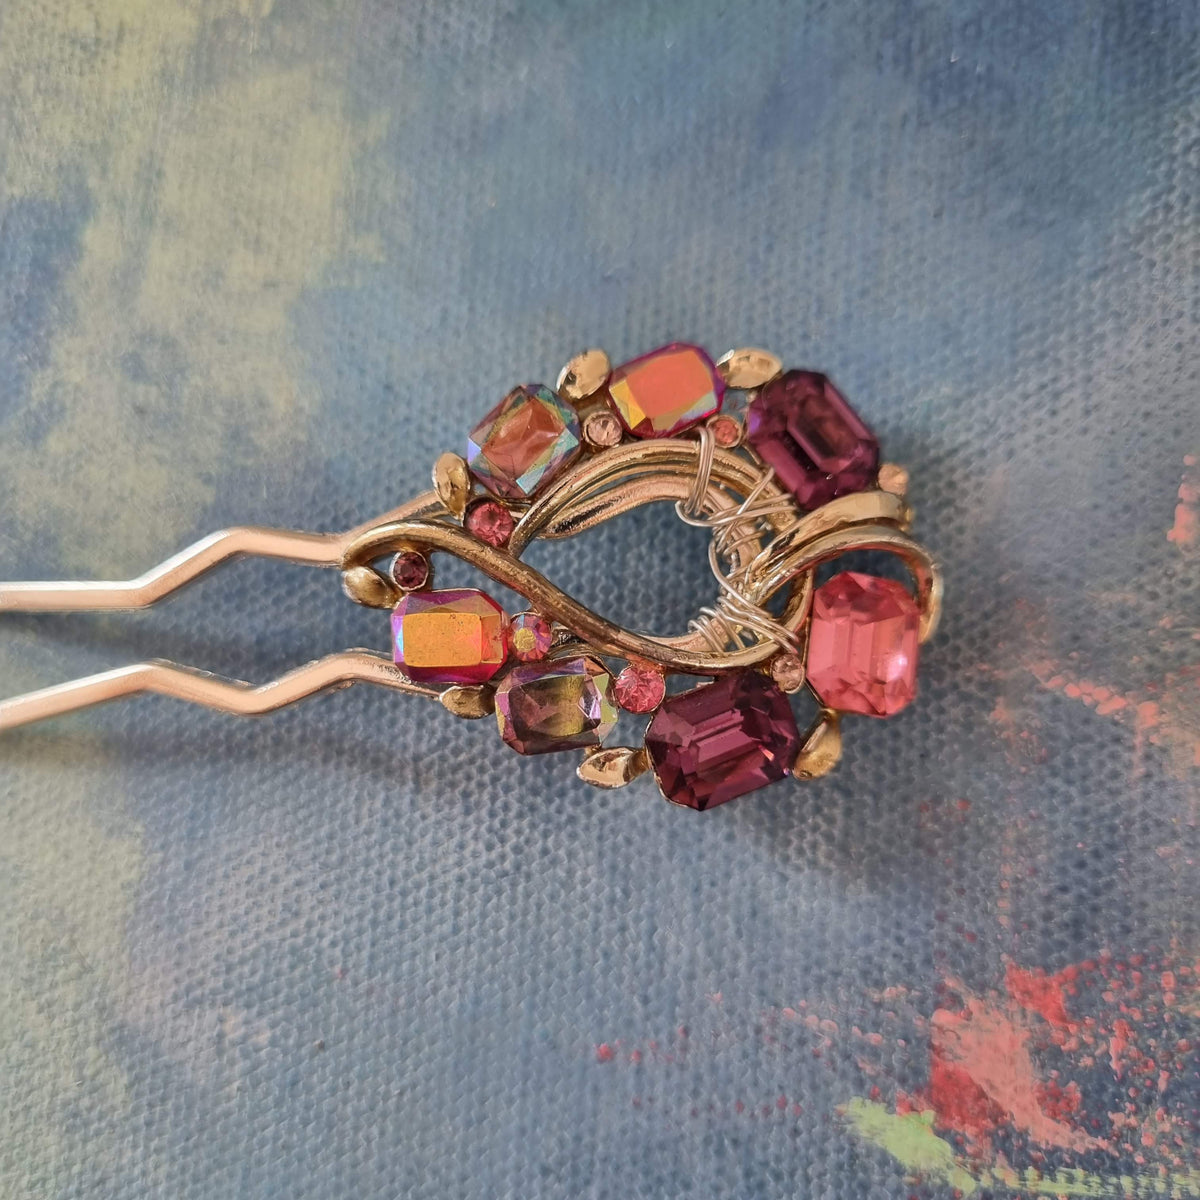 Skøn hårnål med vintage pynt - Hårpynt med blomster og perler til bryllup, konfirmation og fest